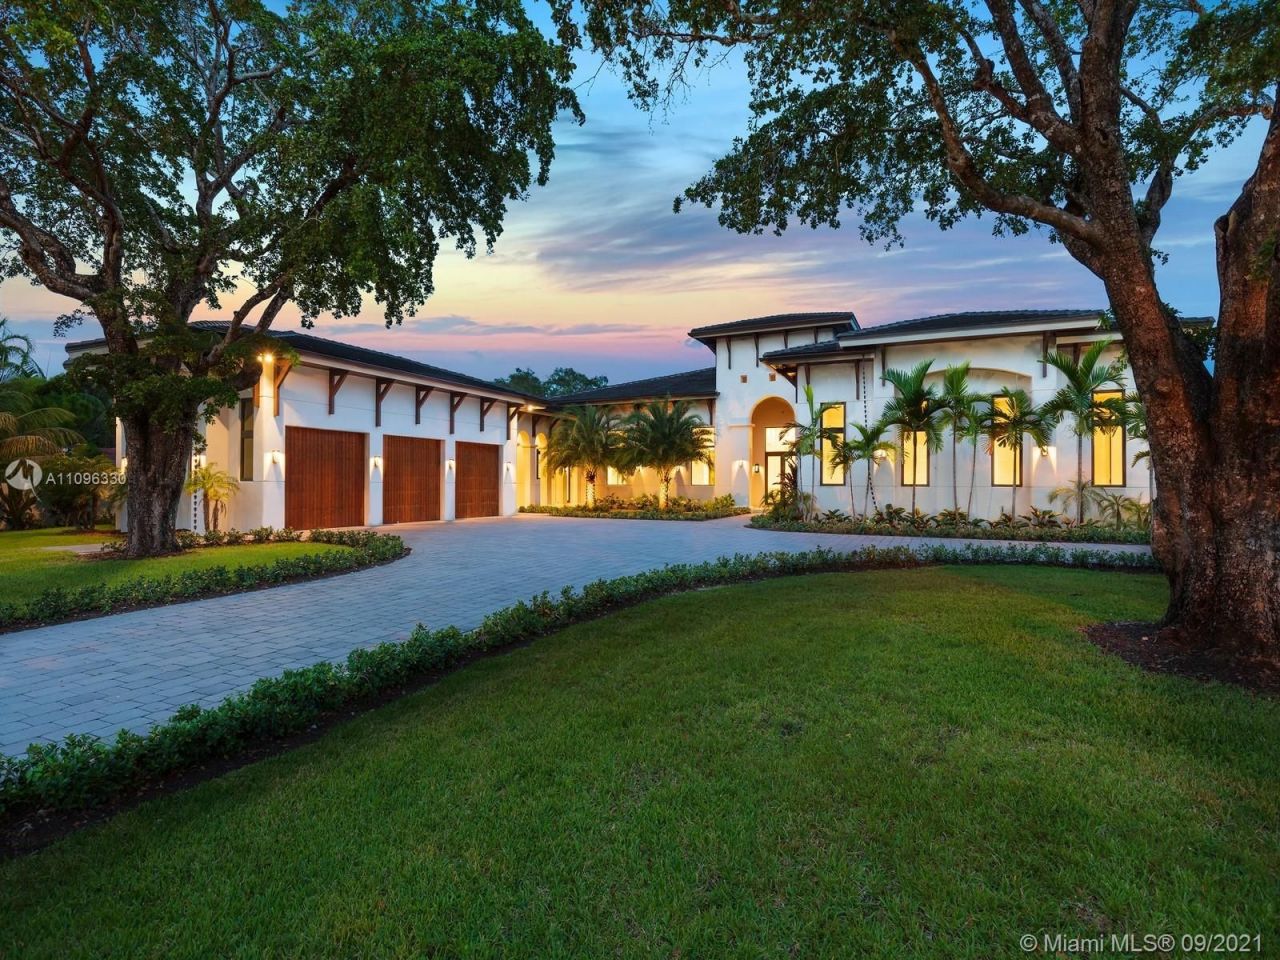 Villa in Miami, USA, 650 sq.m - picture 1